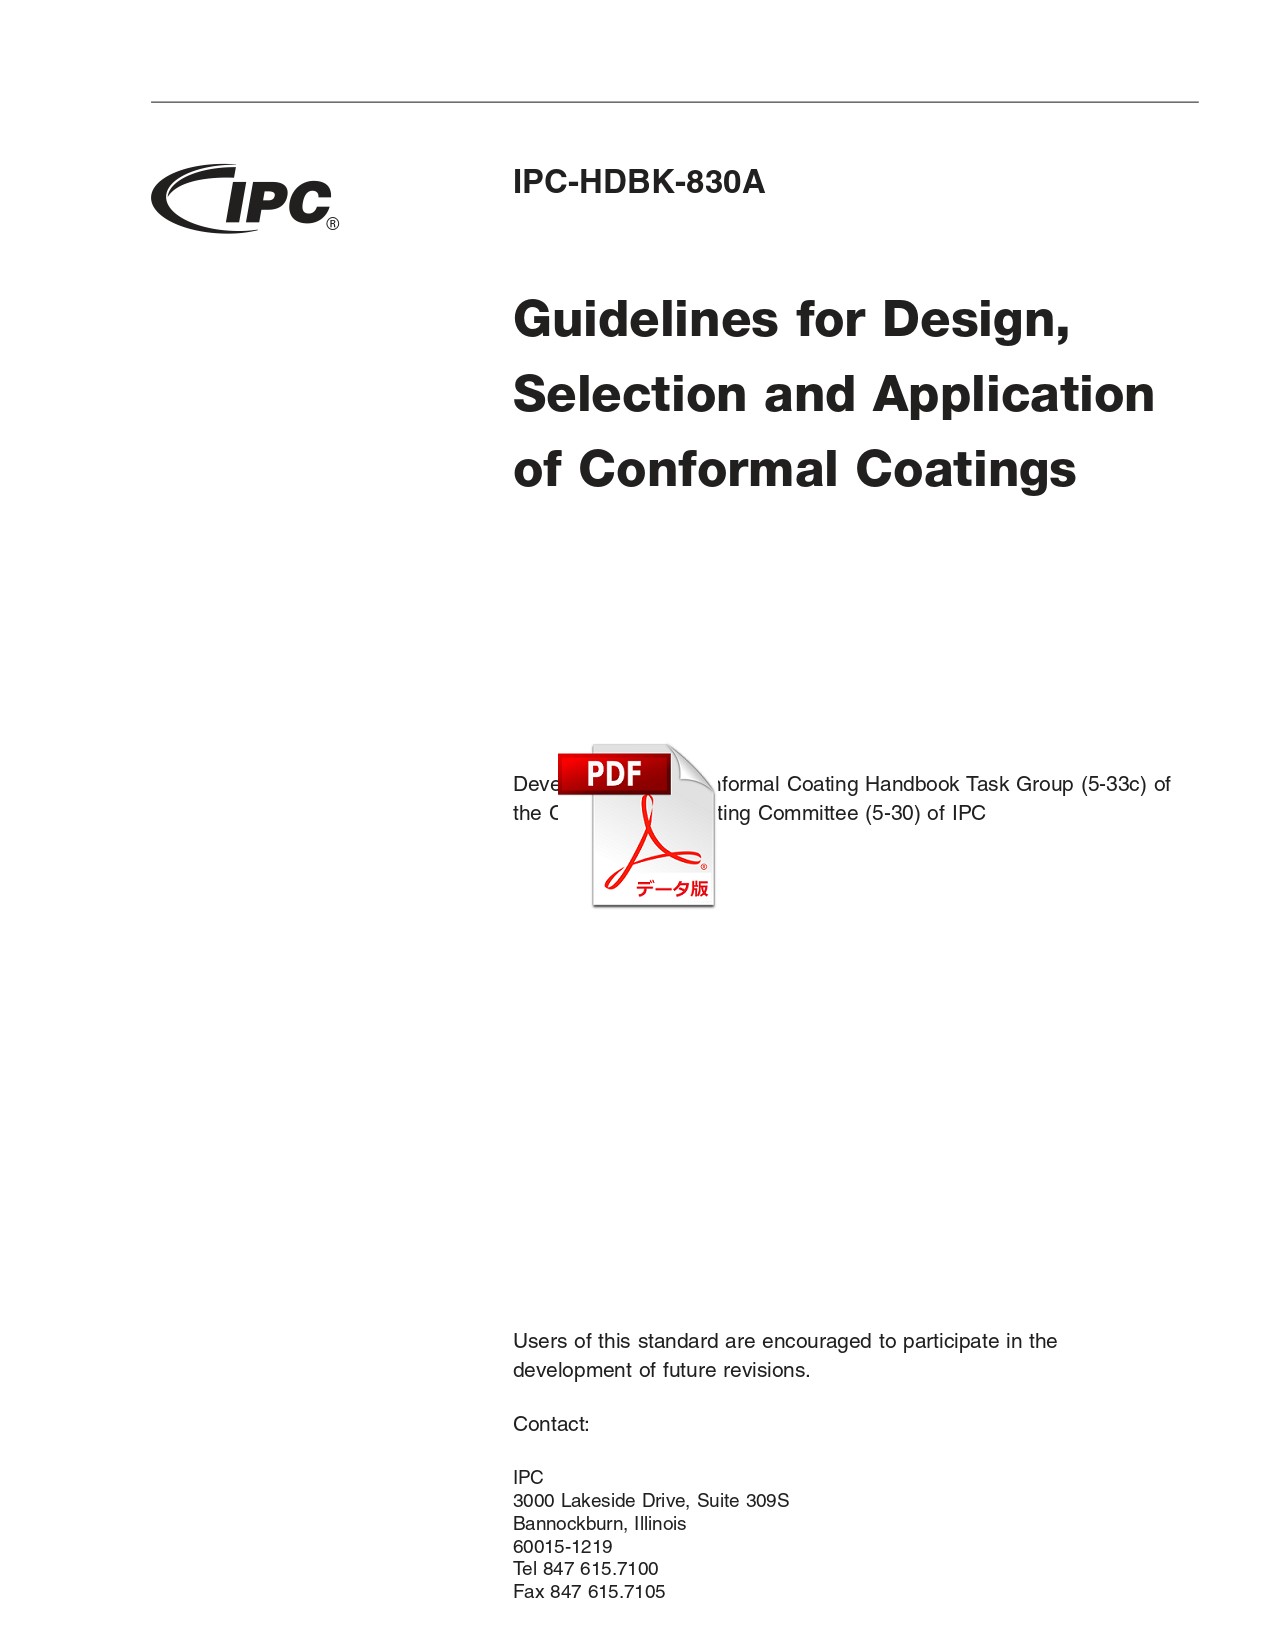 ［英語版］IPC-HDBK-830A: Guidelines for Design, Selection, and Application of Conformal Coatings